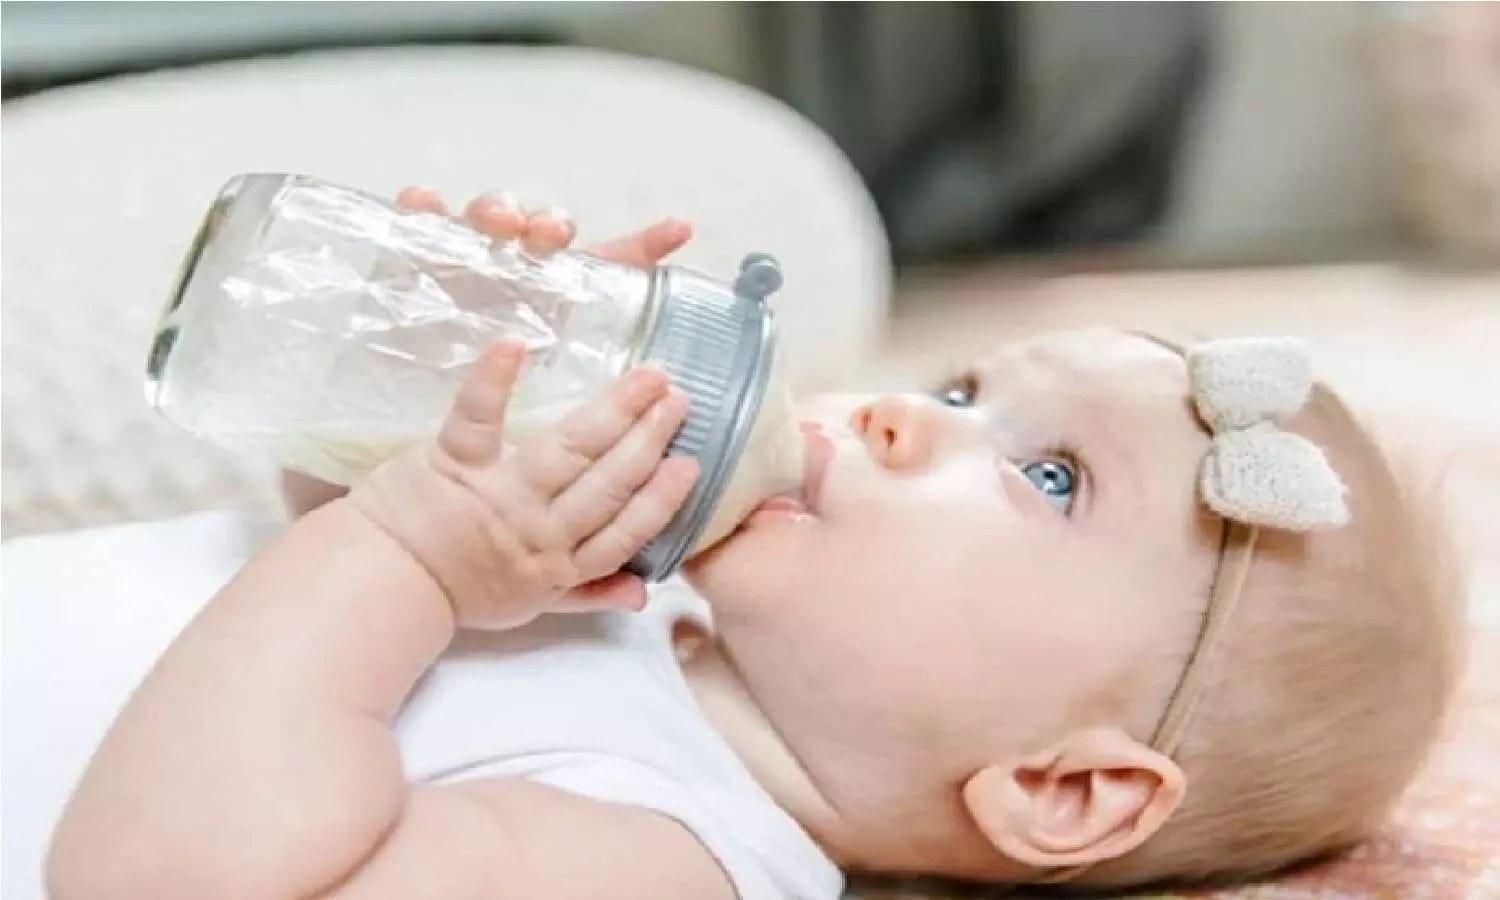 प्लास्टिक की बोतल में बच्चे को दूध पिलाना हो सकता है खतरनाक! जानिए क्या है सच?